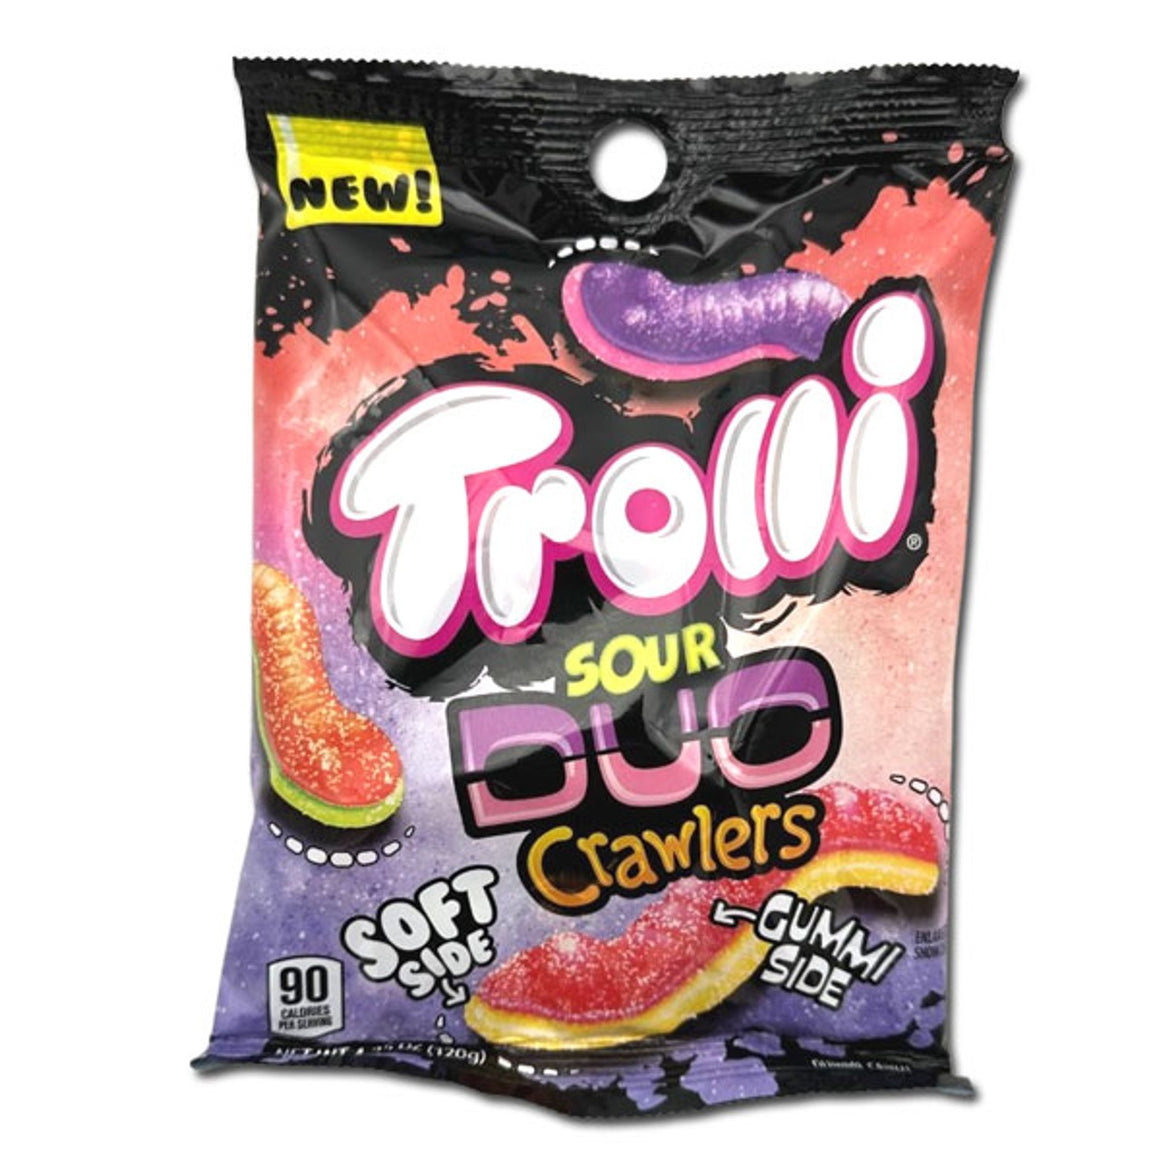 Trolli Sour Duo Crawlers 4.25 oz. Bag